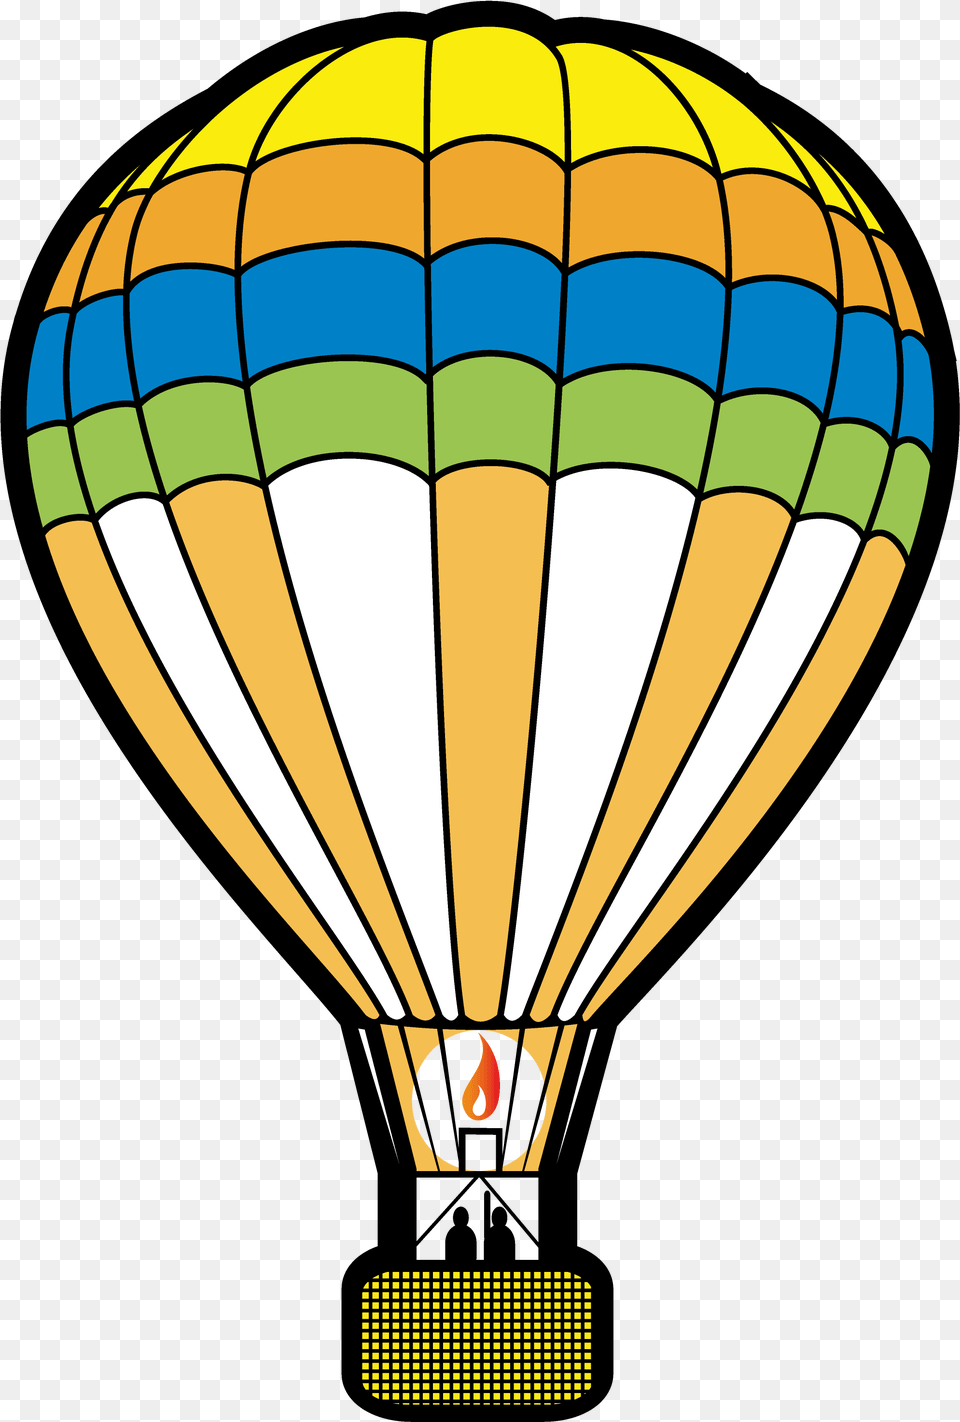 Hot Air Ballooning Clip Art Hot Air Balloon, Aircraft, Hot Air Balloon, Transportation, Vehicle Free Transparent Png